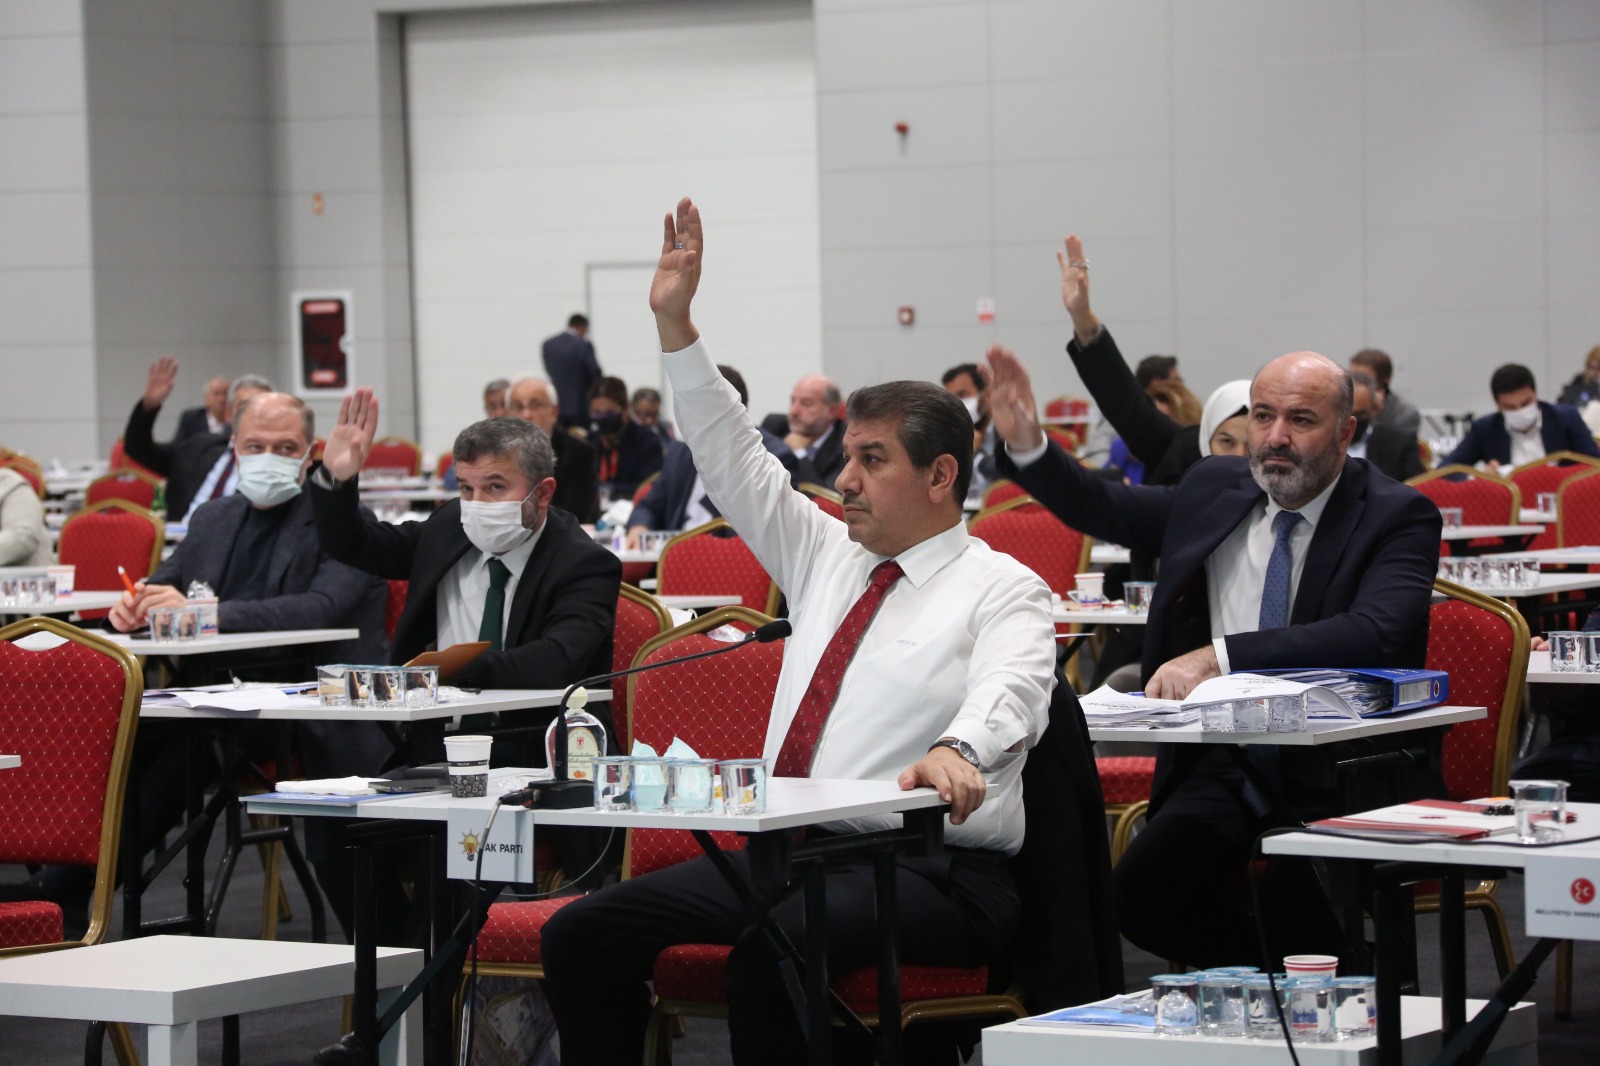 İmamoğlu veto etmişti: Beykoz Çayırı, AKP ve MHP oylarıyla "Millet Bahçesi"ne dönüştürülecek